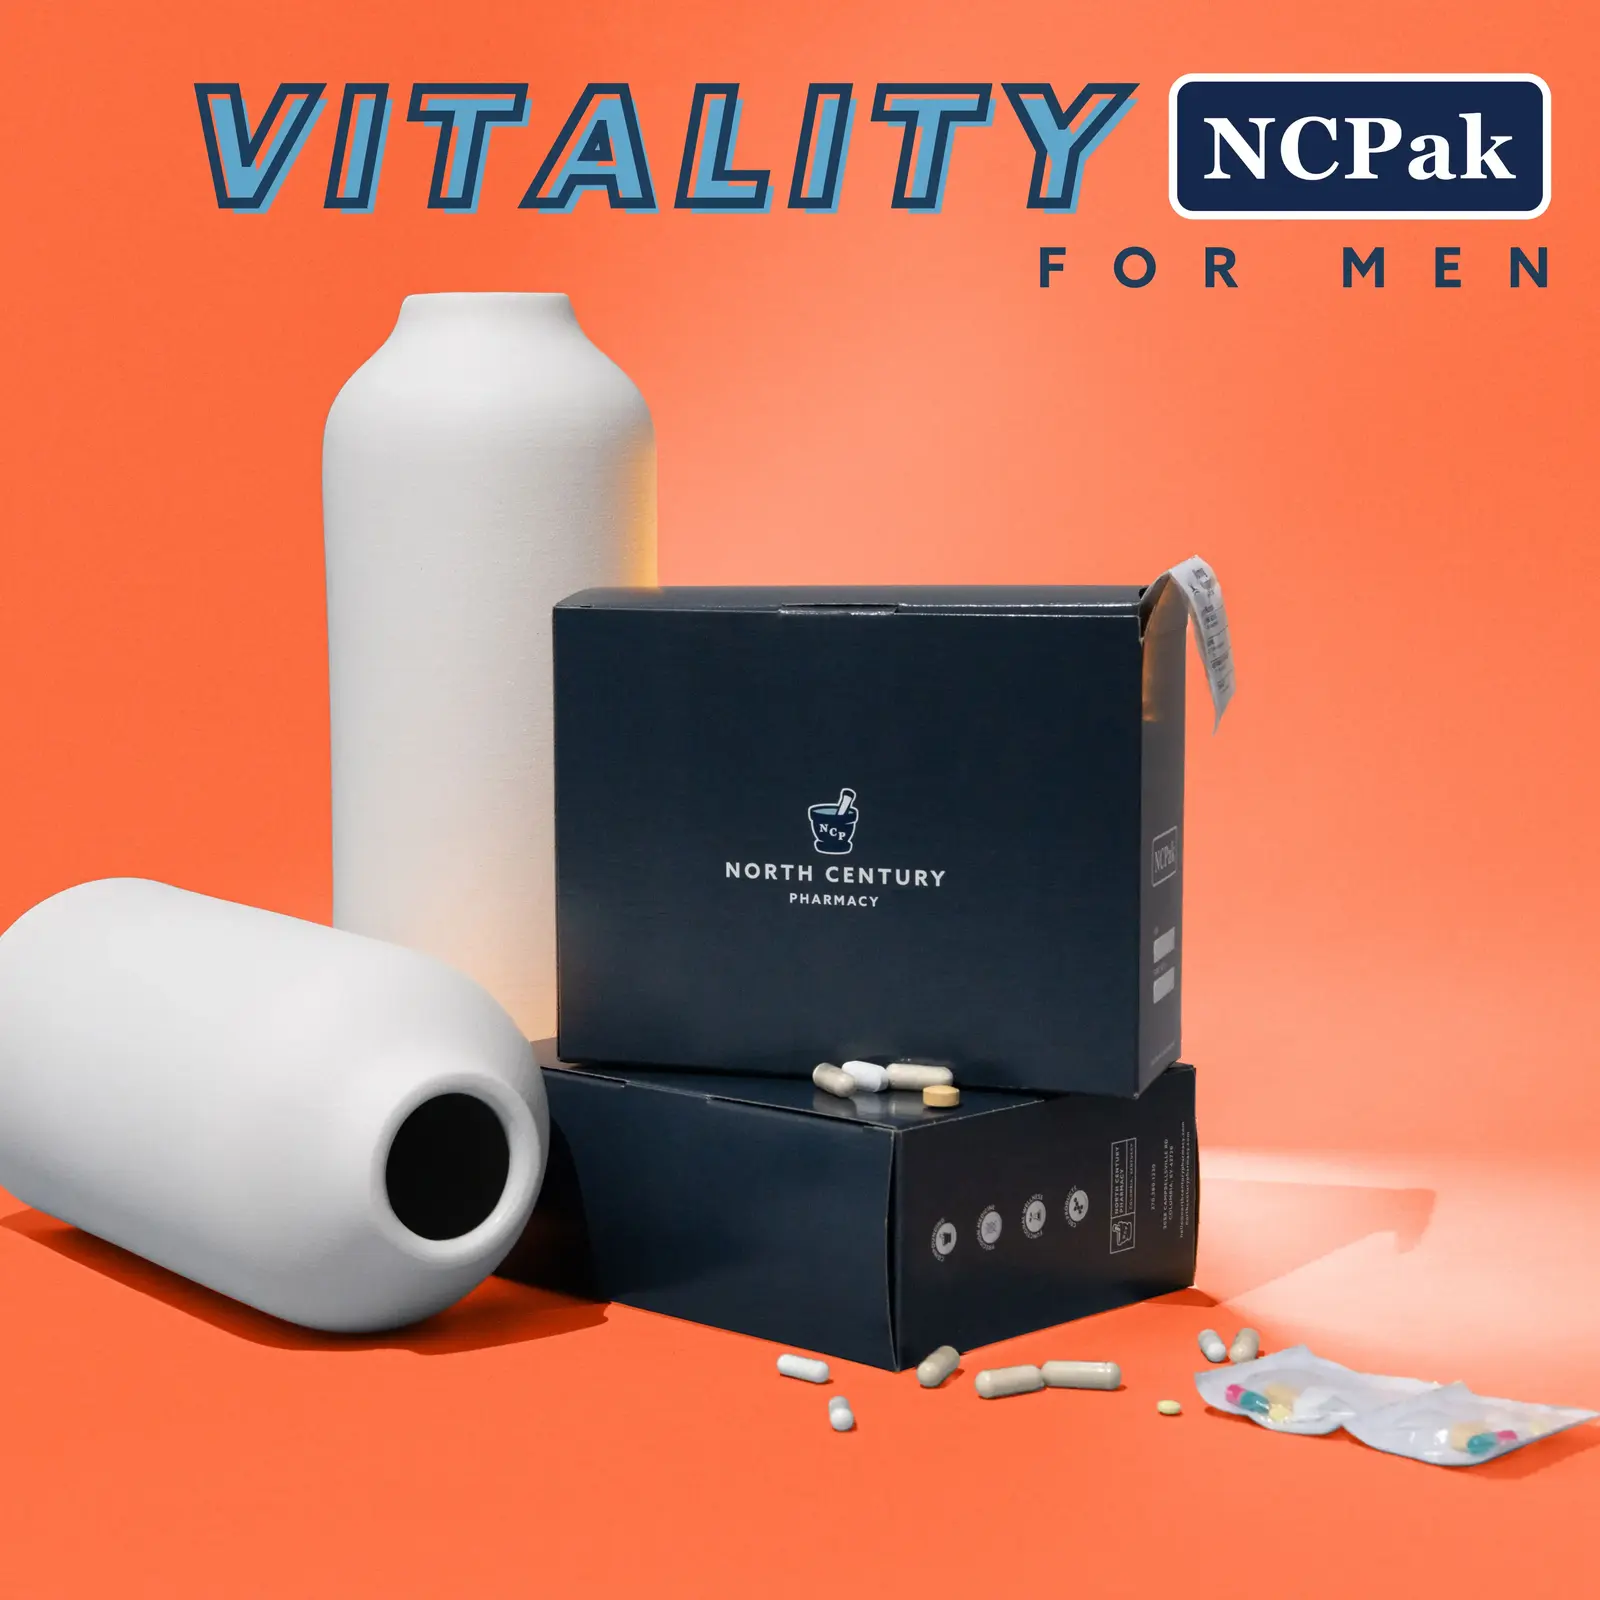 VITALITY NCPak for Men